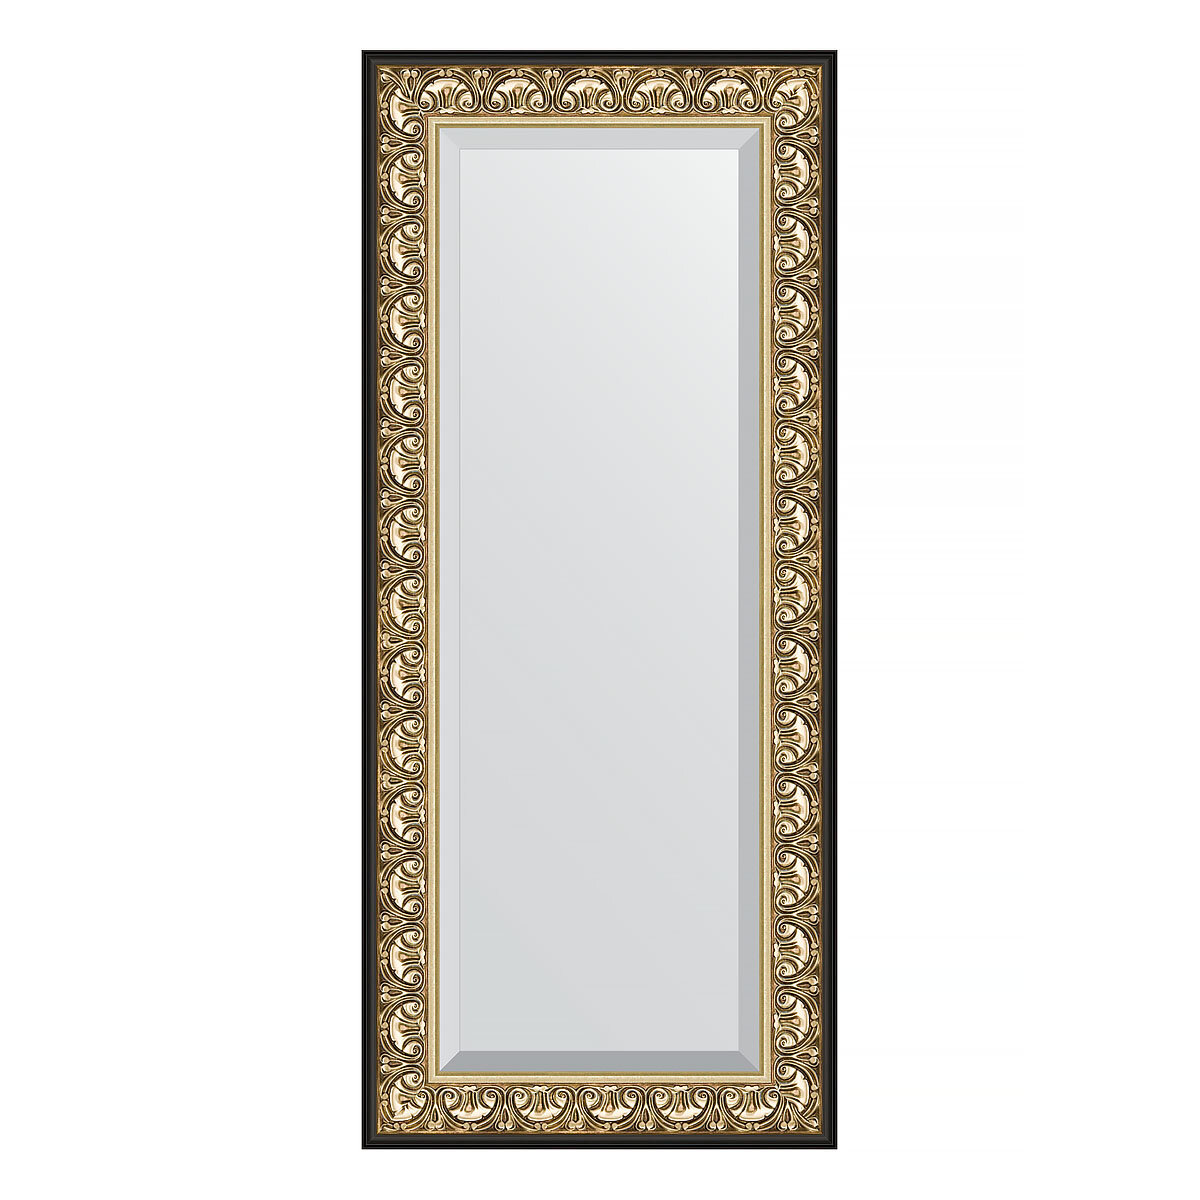 Зеркало настенное с фацетом EVOFORM в багетной раме барокко золото, 65х150 см, для гостиной, прихожей, кабинета, спальни и ванной комнаты, BY 1271